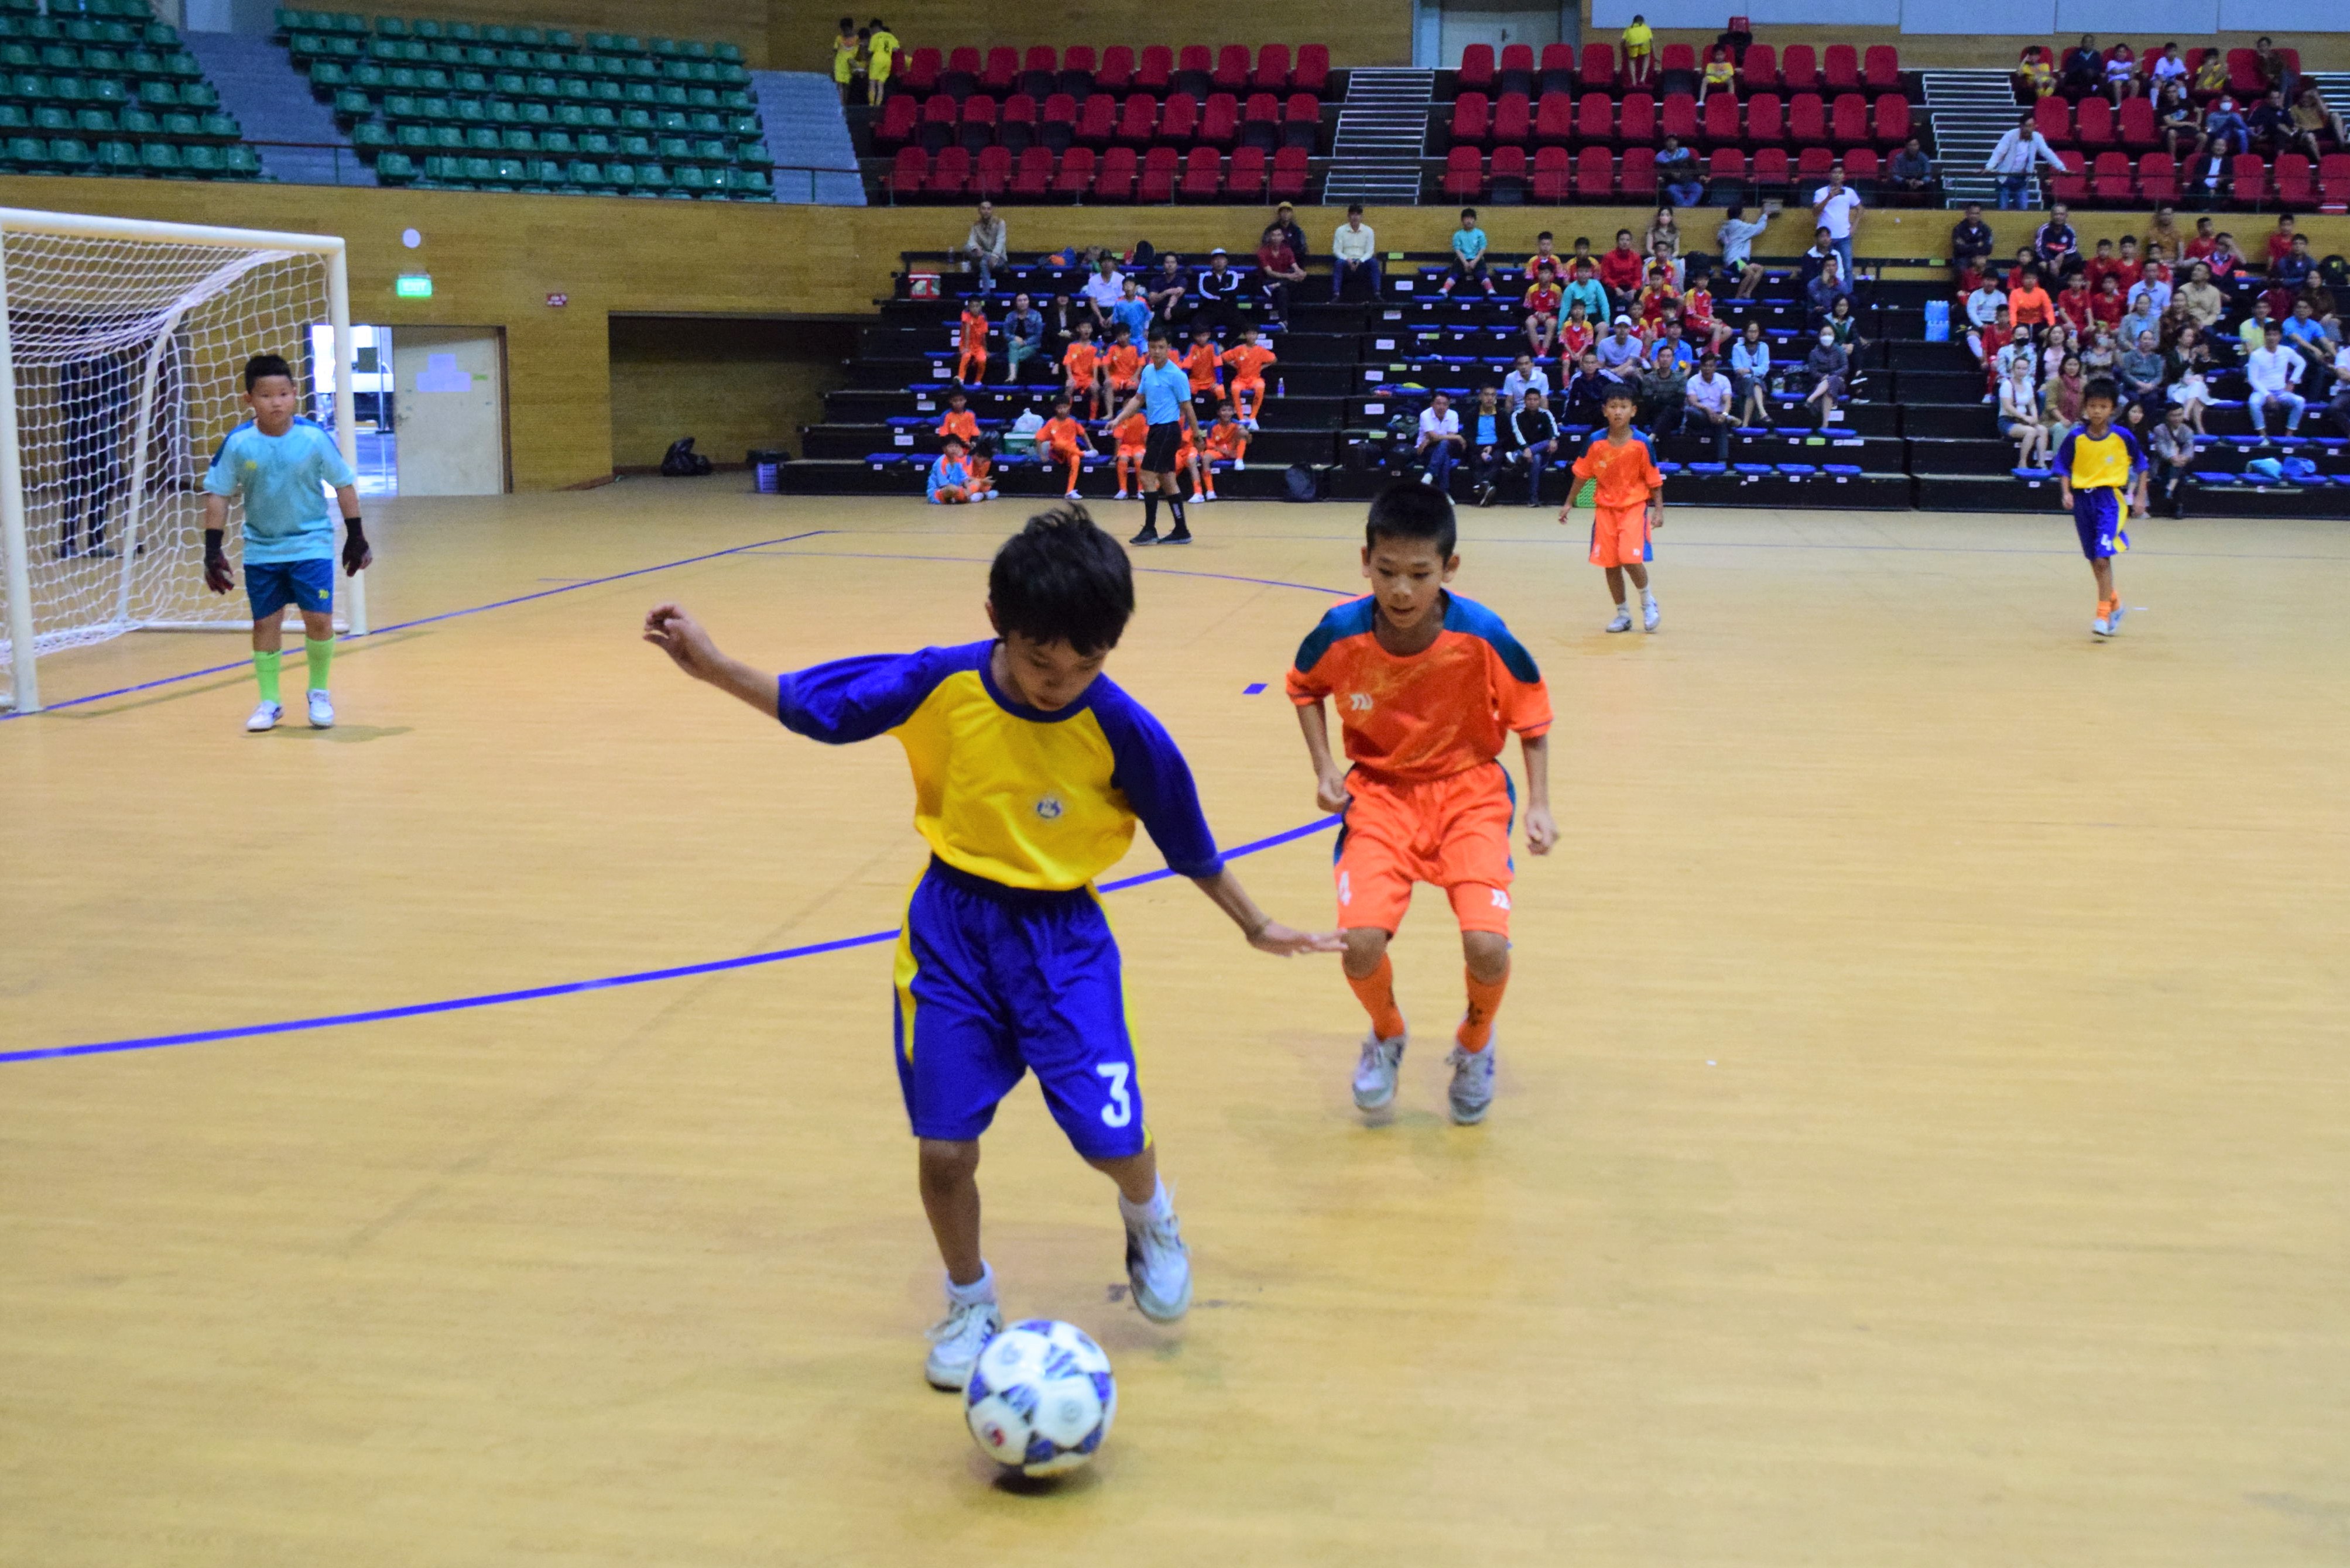 Giải bóng đá nhi đồng thành phố Đà Nẵng là sân chơi thể thao bổ ích dành cho học sinh. Ảnh: P.N